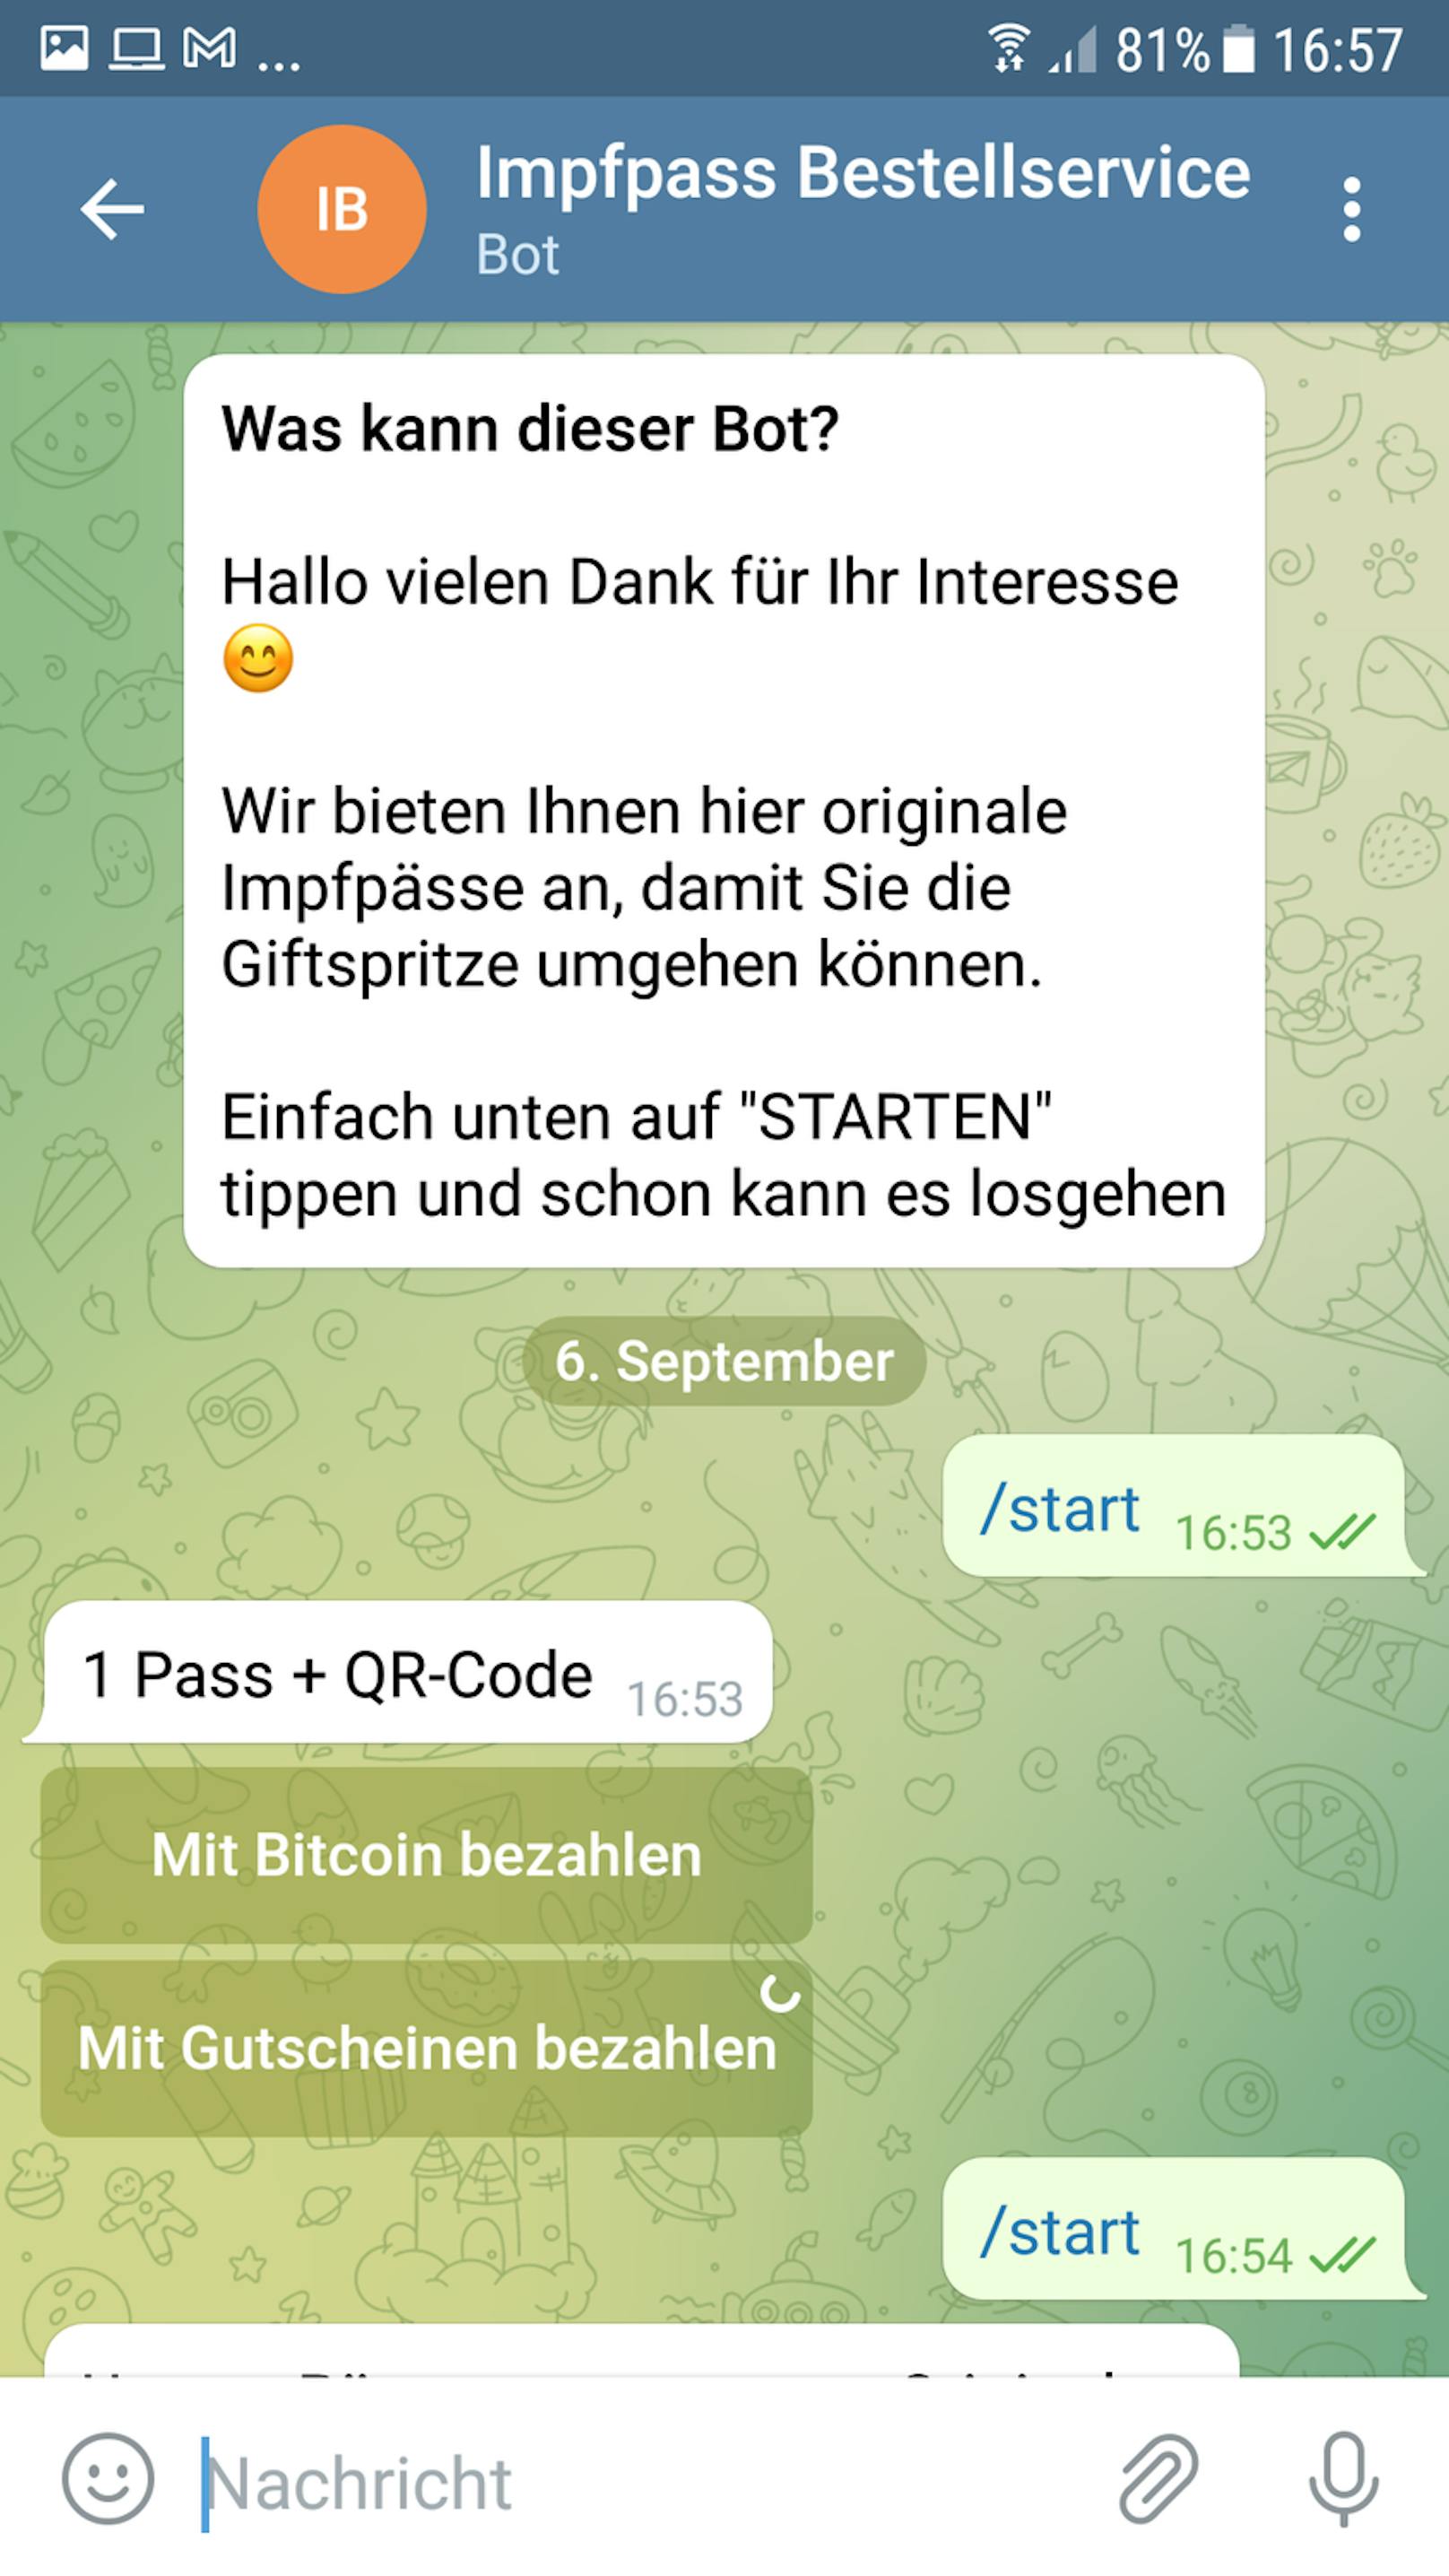 Auf Telegram kann man per Chatbot einen Pass bestellen.